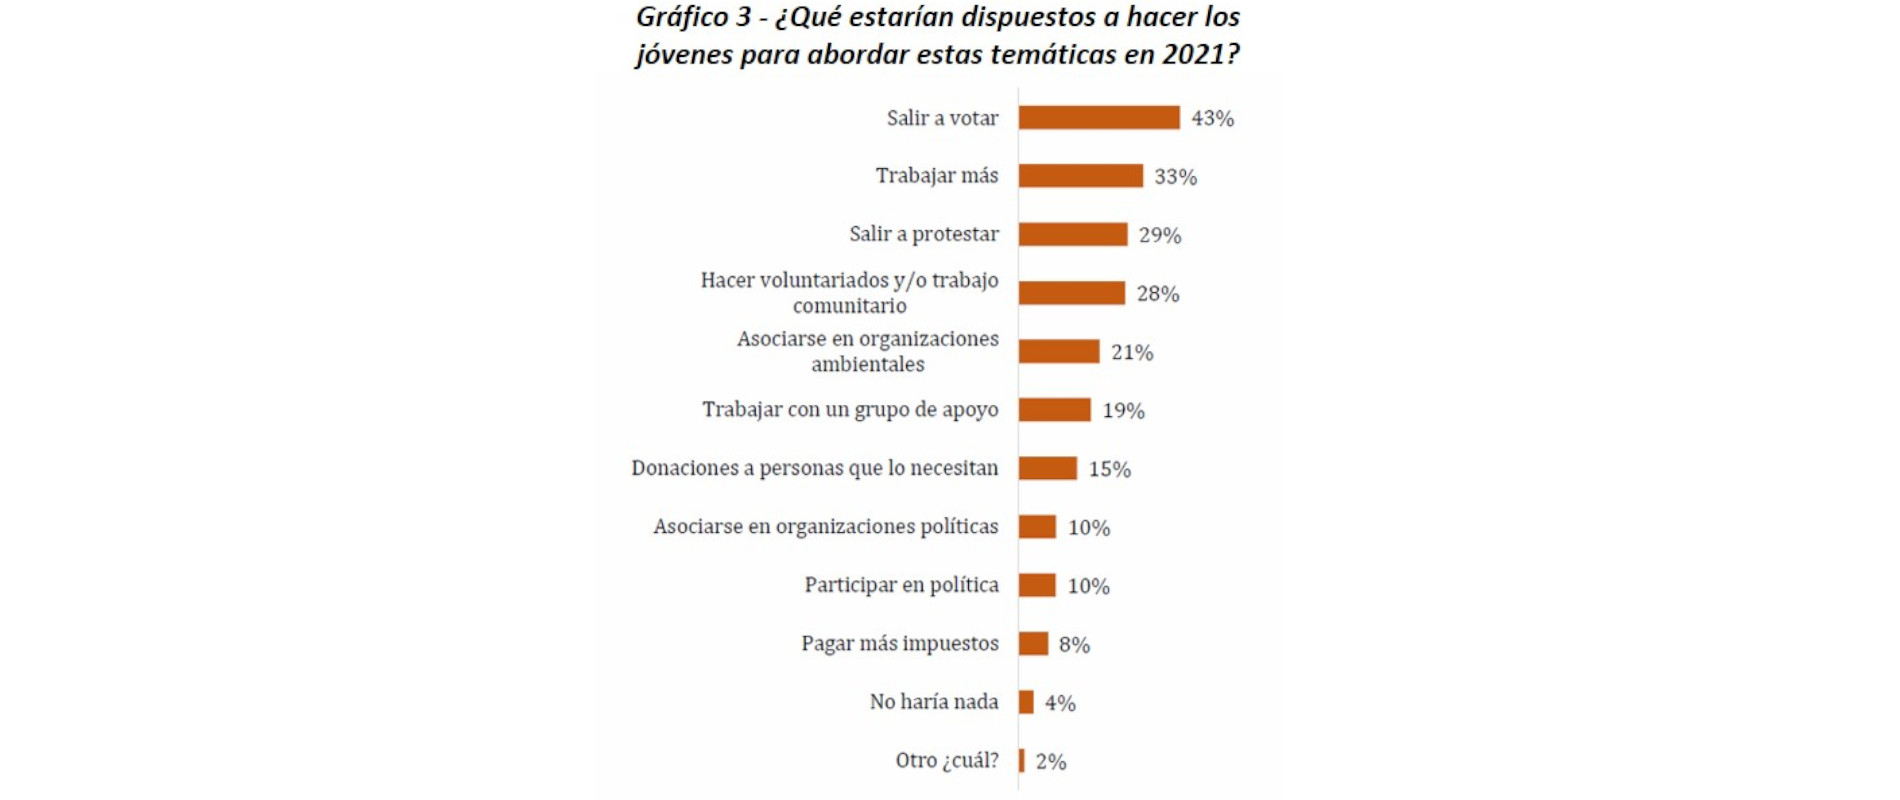 Trabajar, salir a votar y a protestar son los mayores intereses de los encuestados. Gráficos elaborados por la Universidad del Rosario.